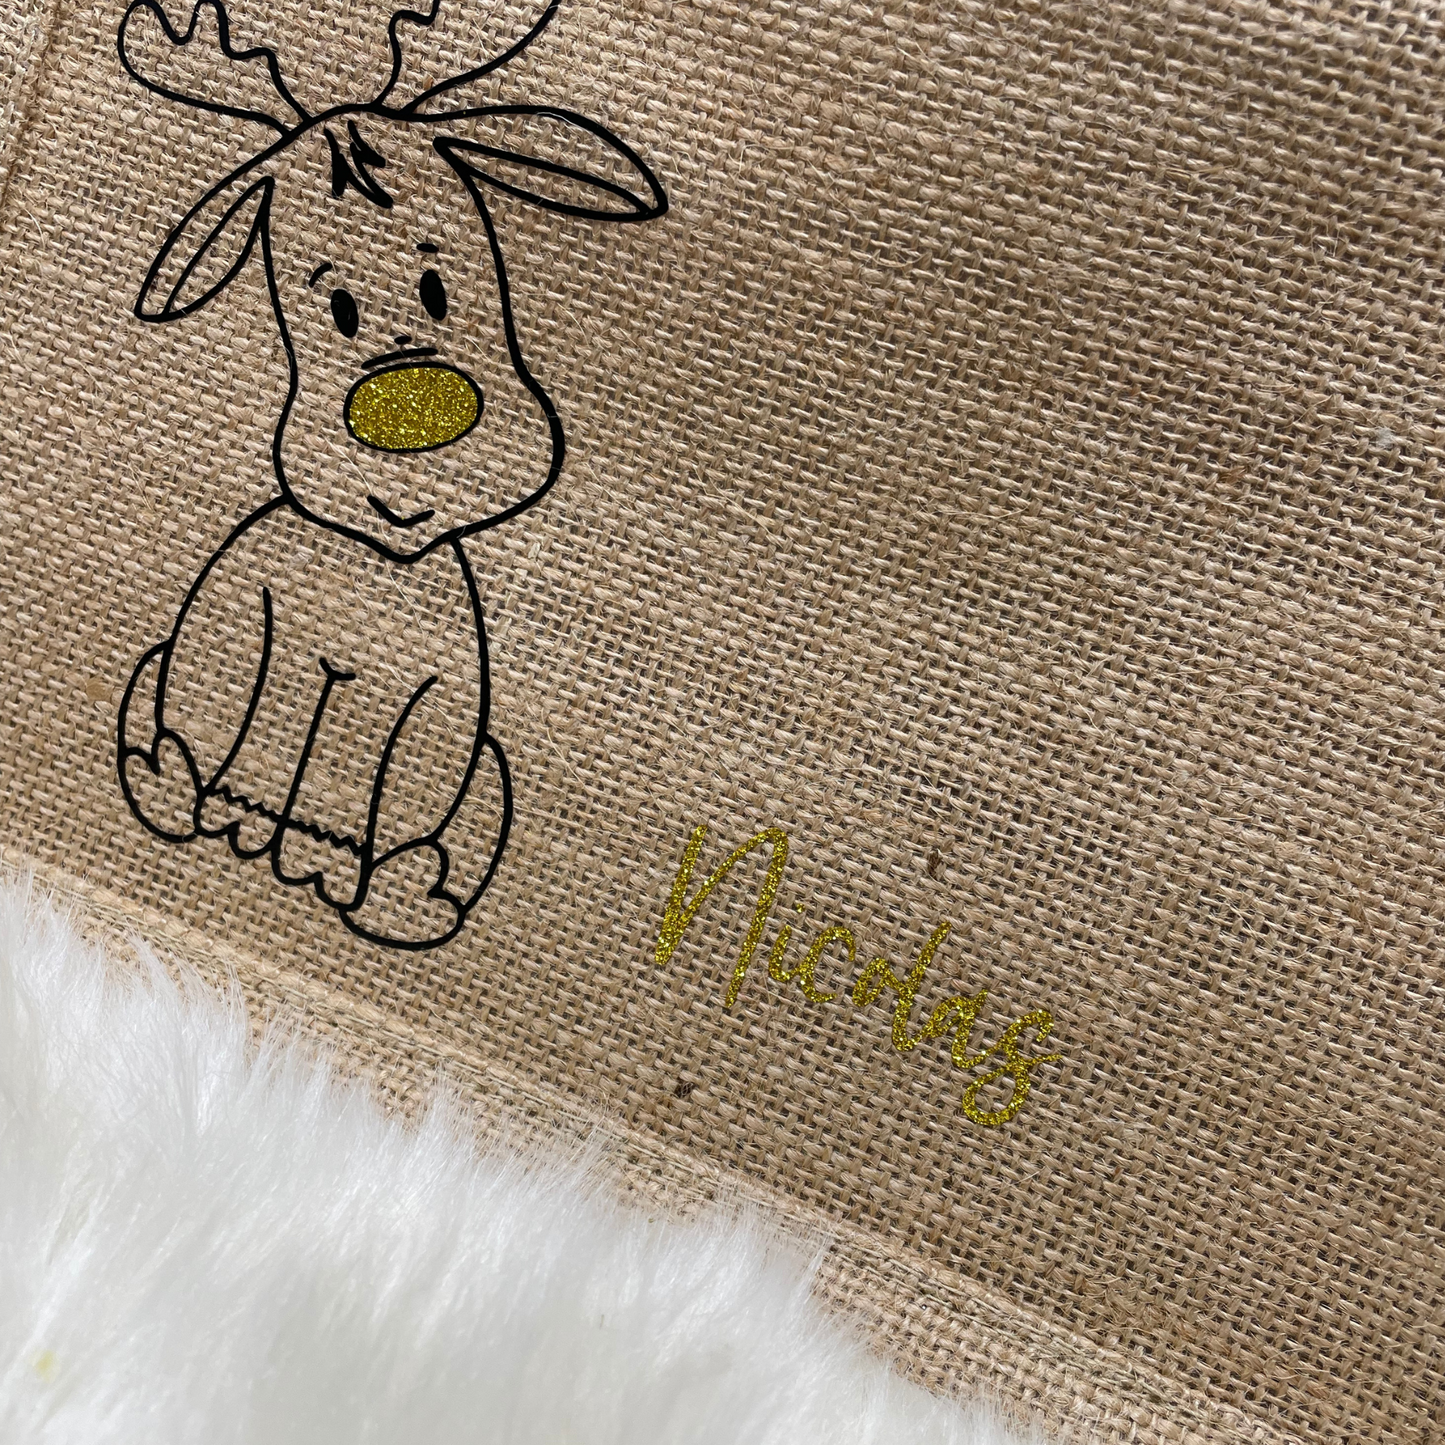 Jutetasche Weihnachten Jutebeutel klein - personalisiert mit Rentier und Name - persönliche Geschenkverpackung - nachhaltig Glitzer